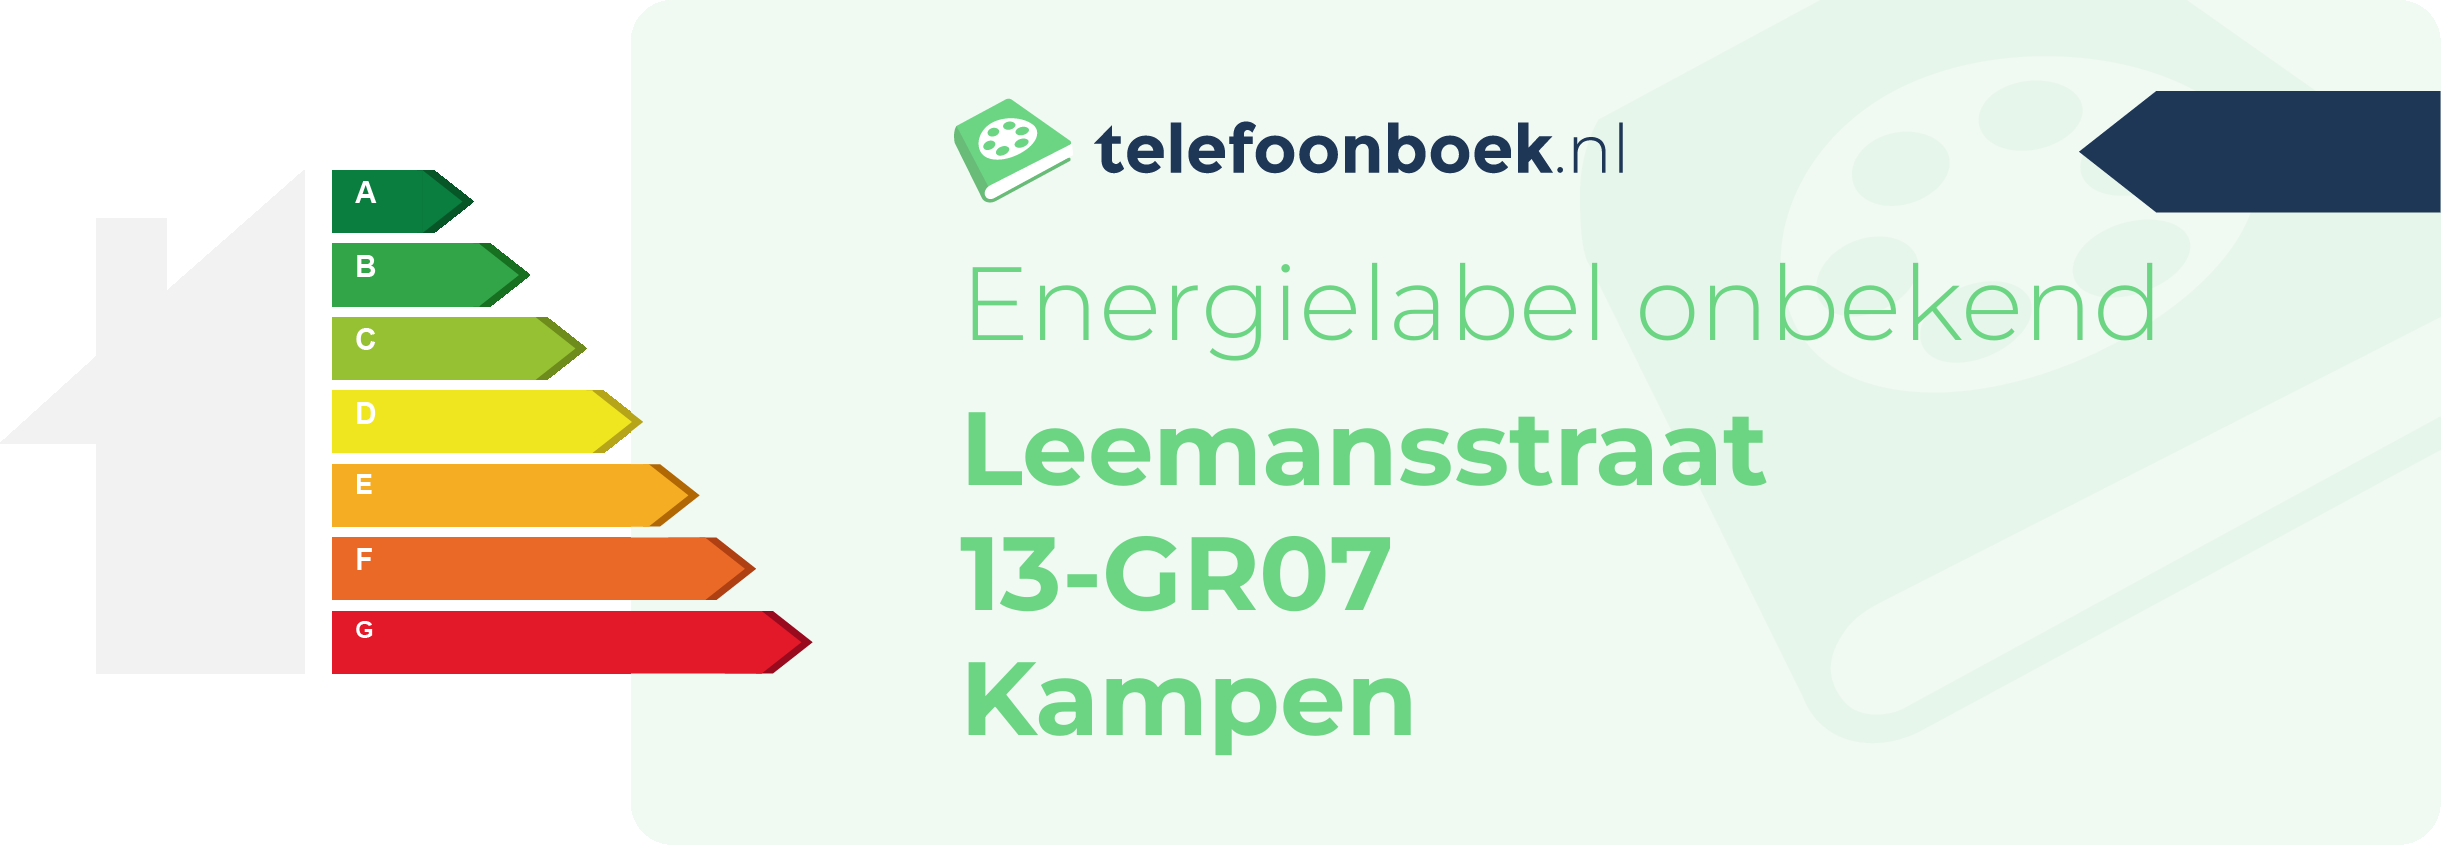 Energielabel Leemansstraat 13-GR07 Kampen